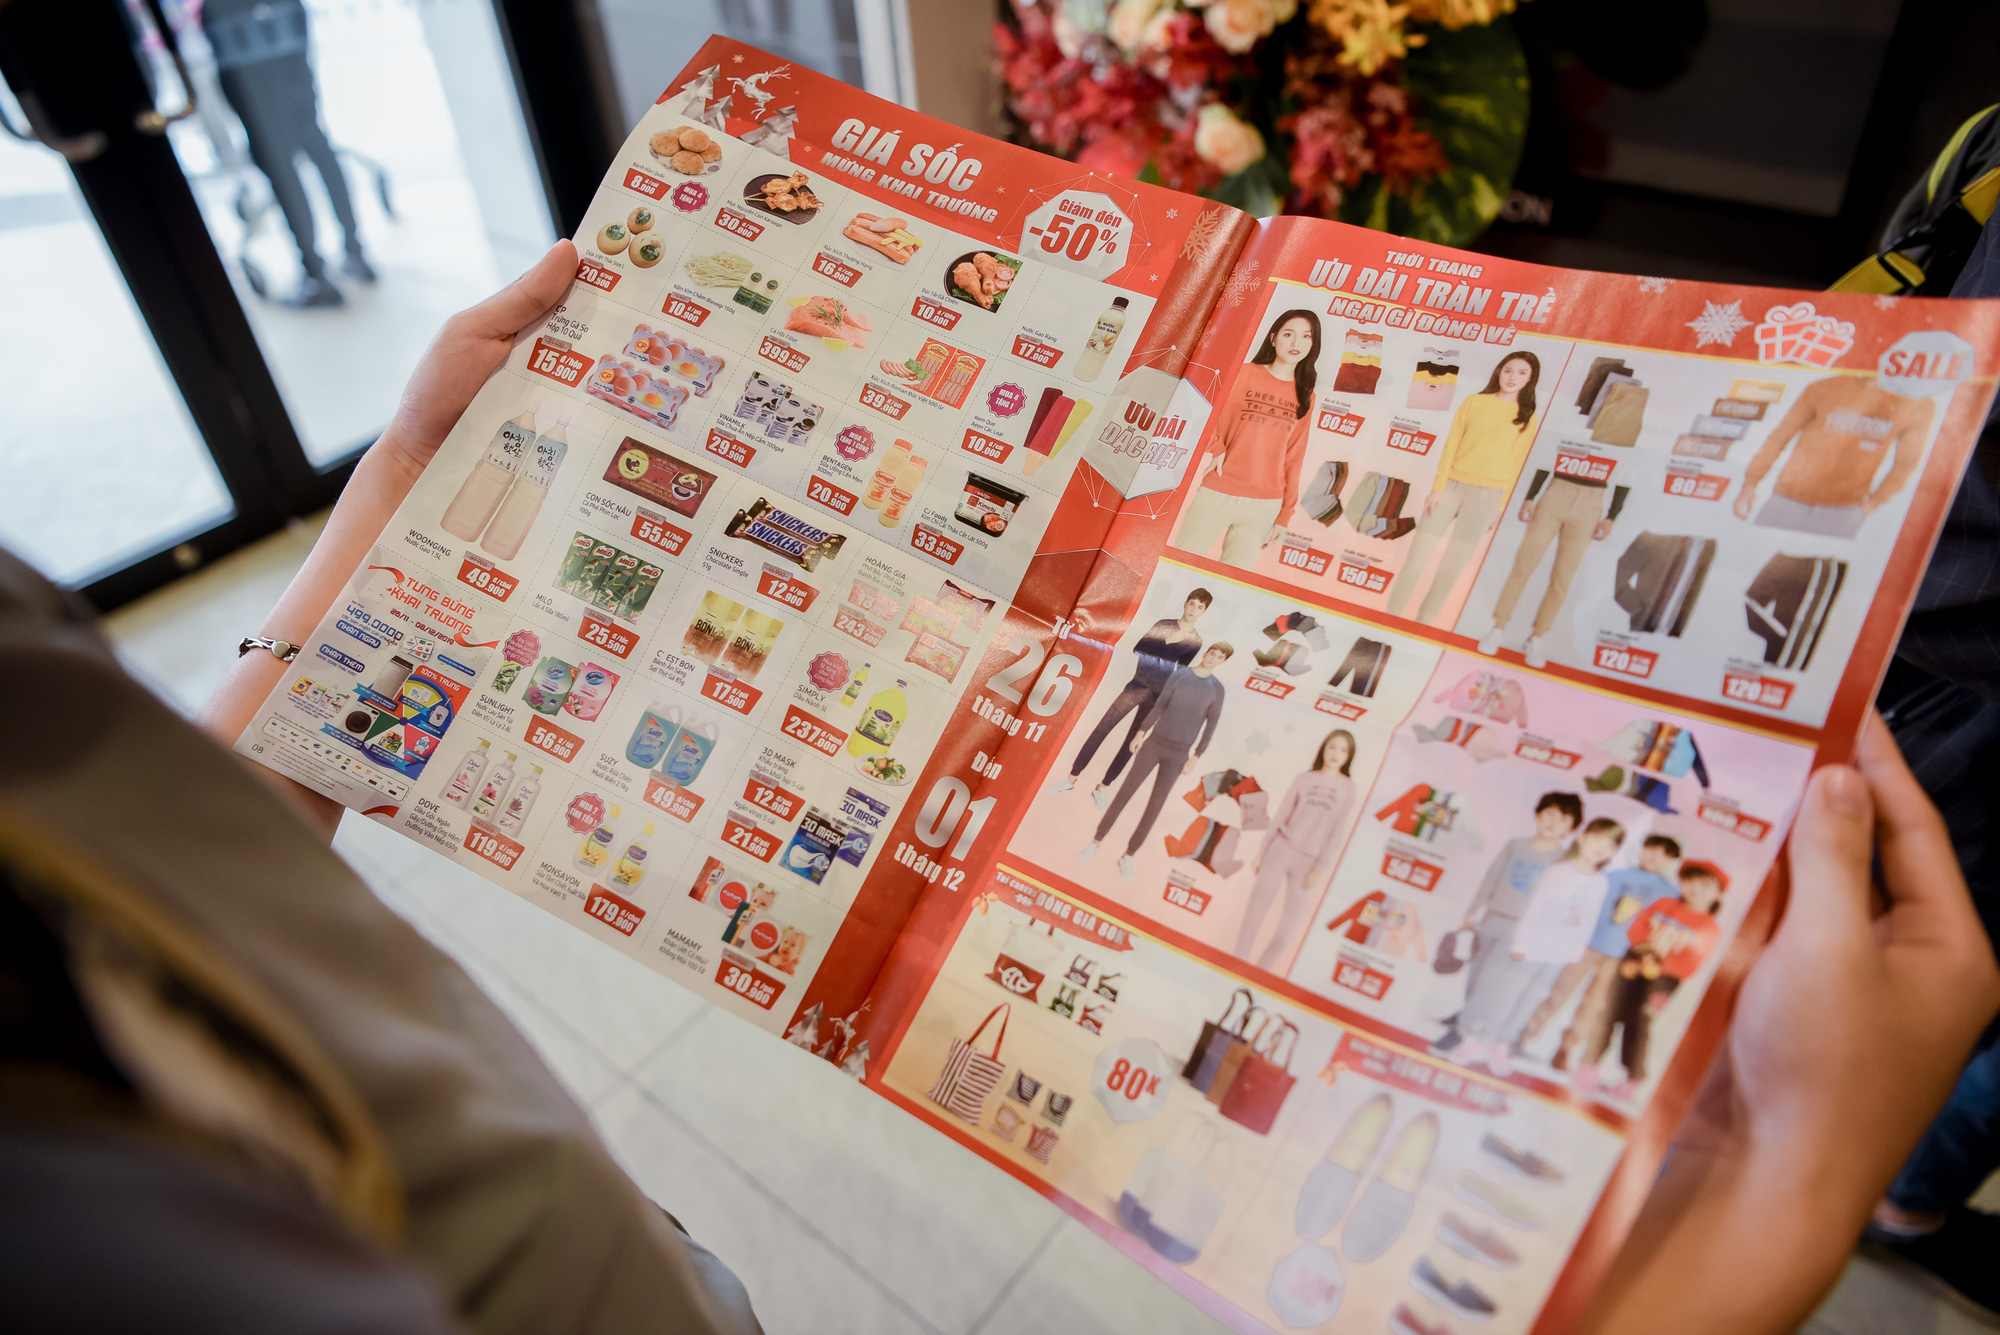 Đây là tất cả những khuyến mại hời nhân dịp khai trương tại Aeon Mall Hà Đông mà người tiêu dùng thông thái cần biết - Ảnh 6.